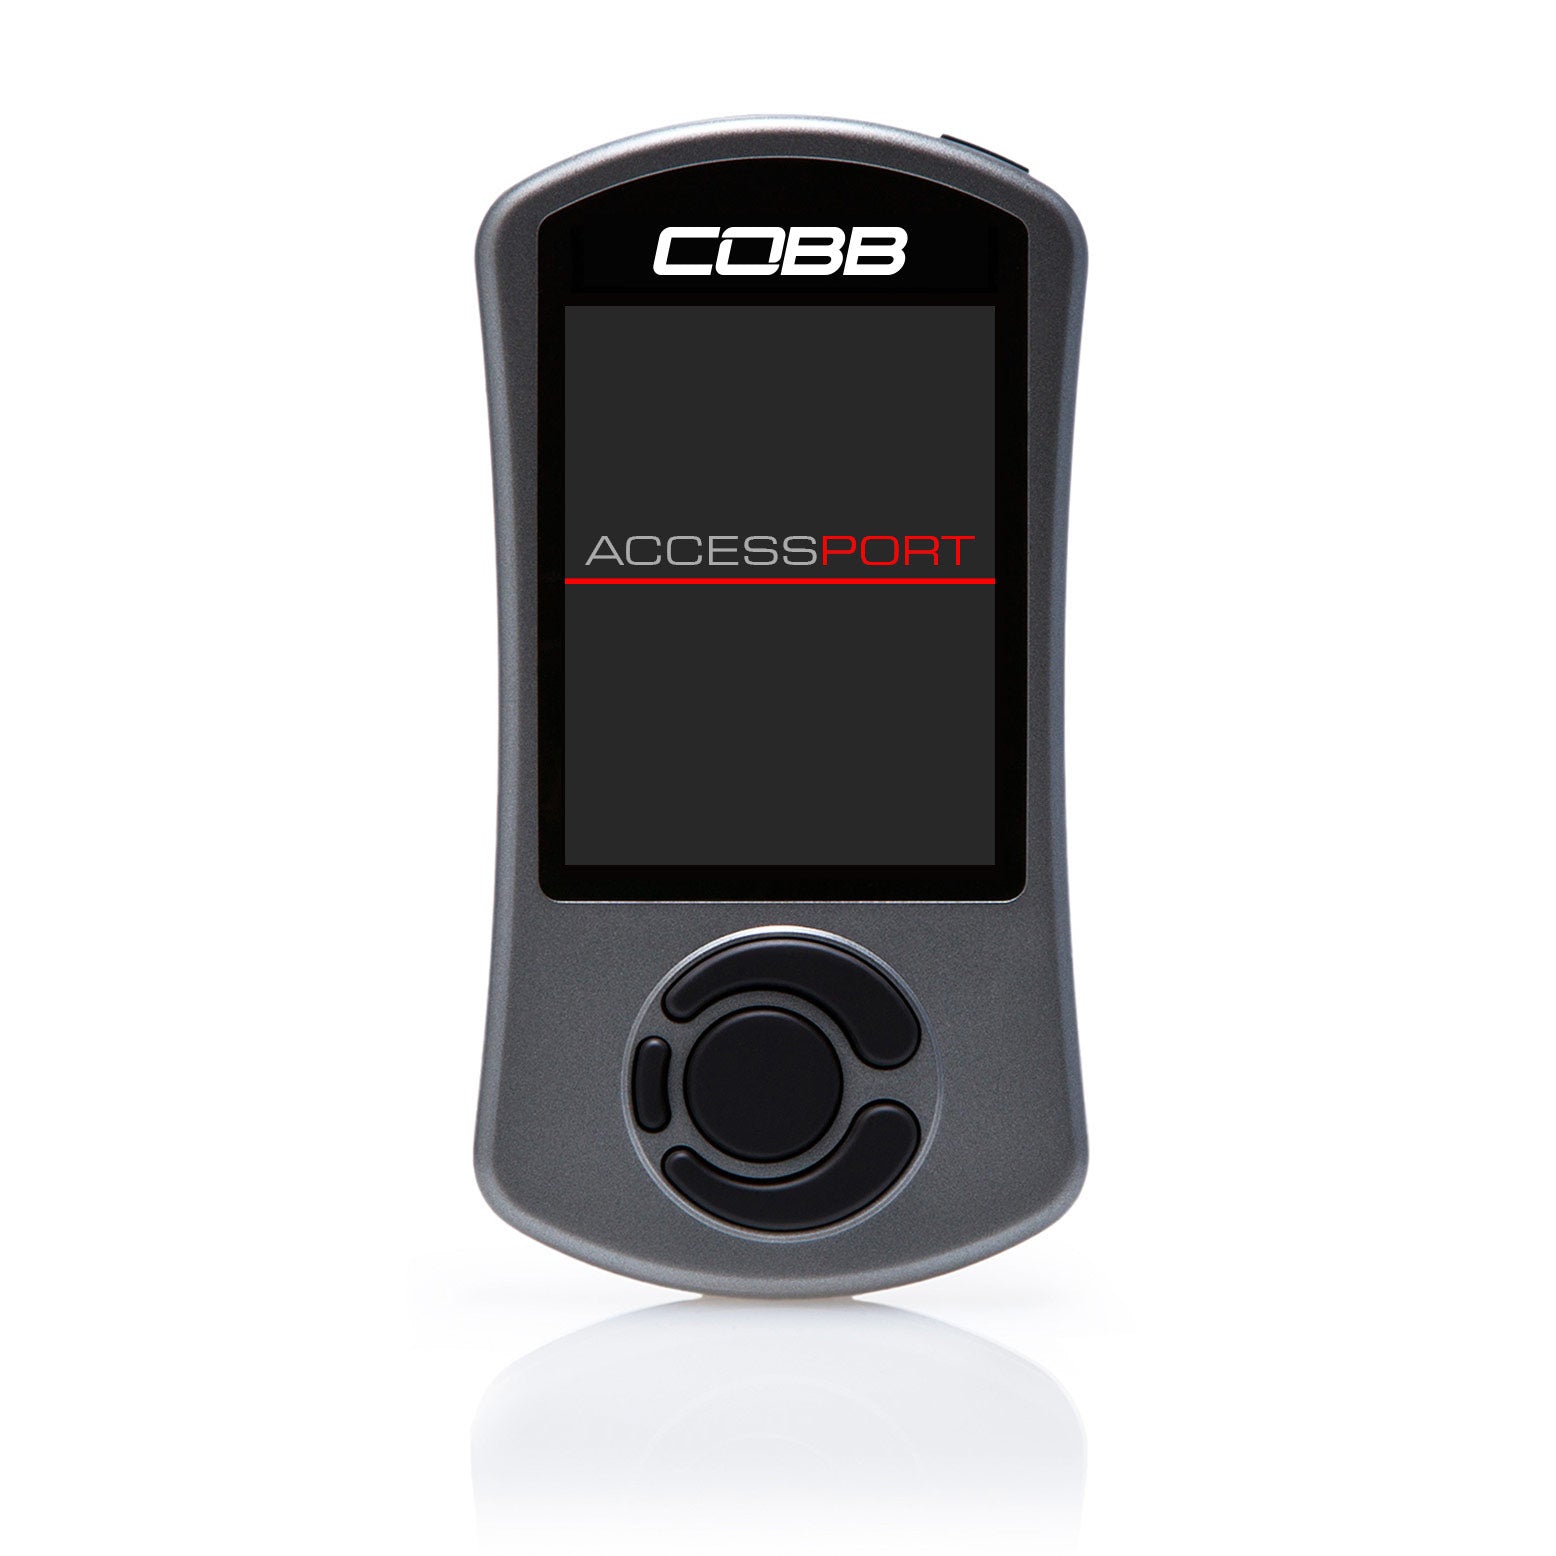 COBB AP3-POR-011 AccessPORT V3 PORSCHE 911 991.2 CARRERA/S/GTS Photo-1 